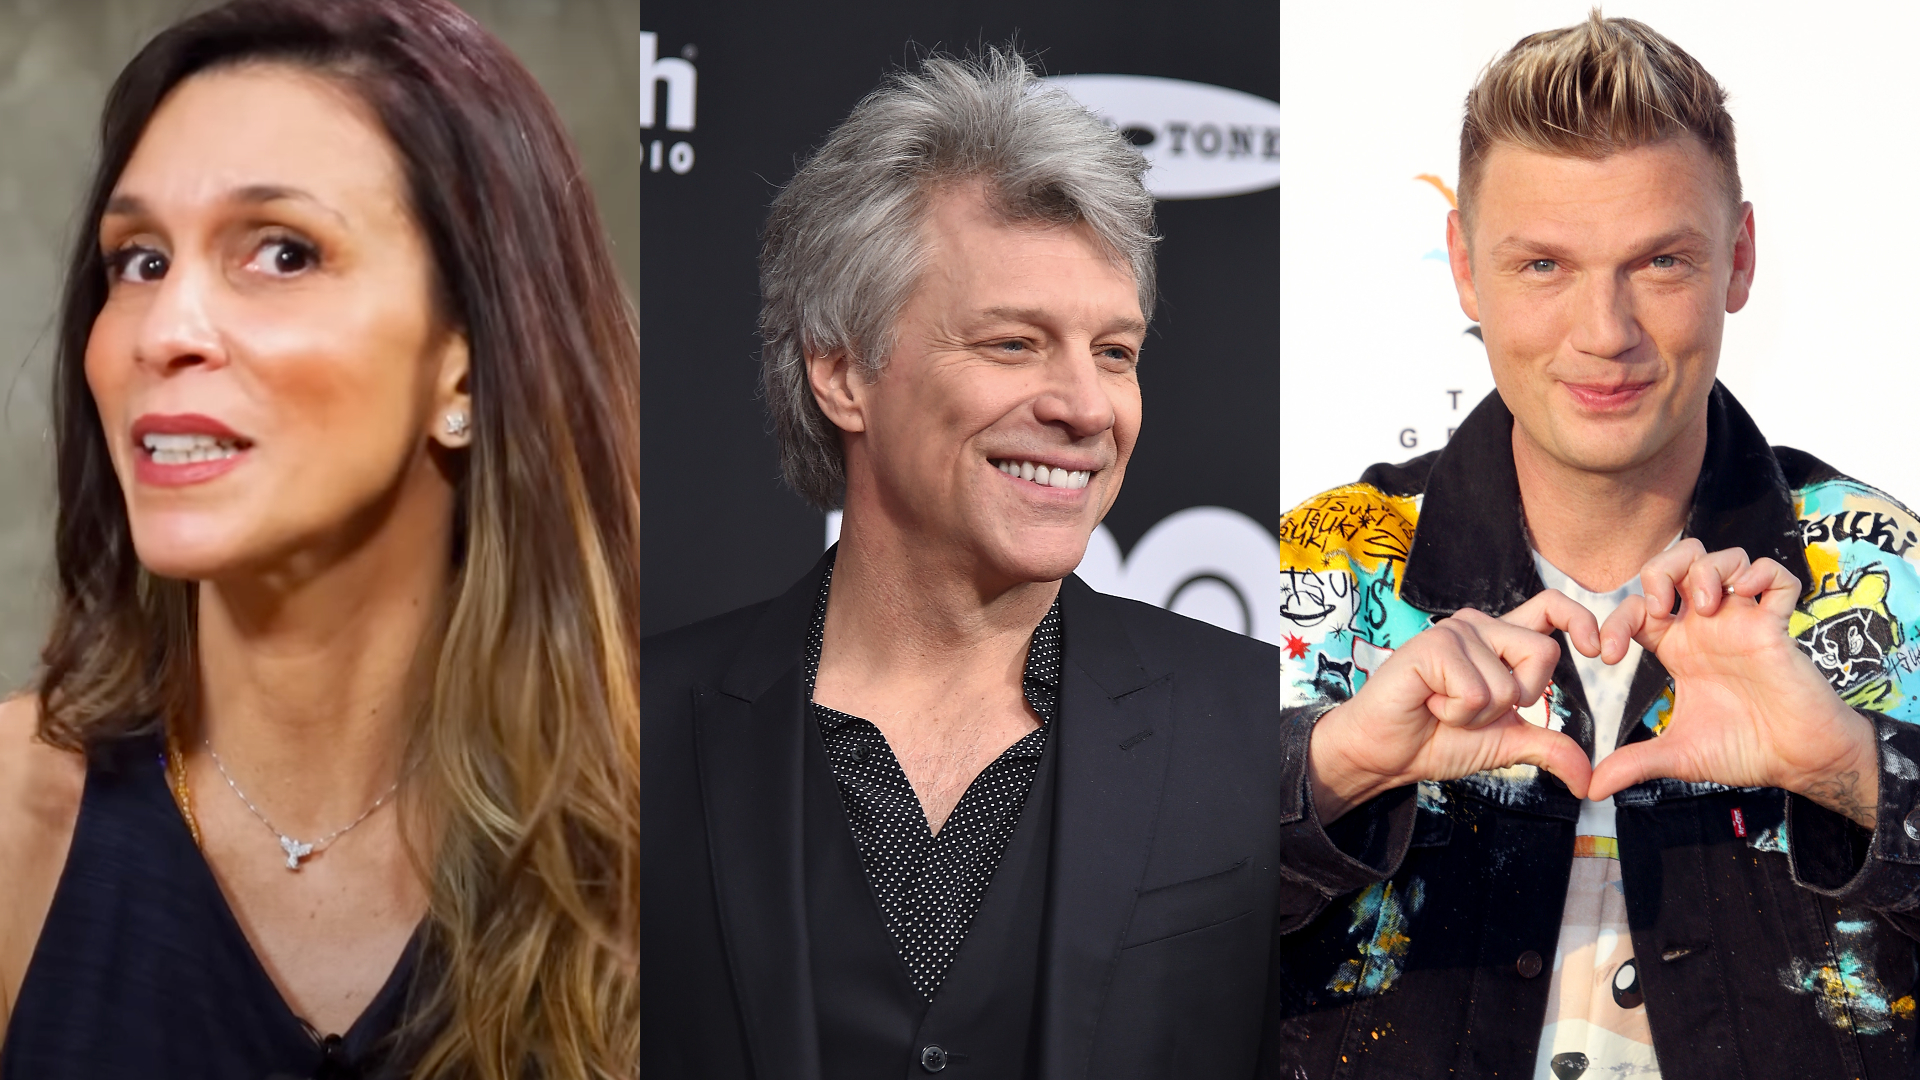 Sarah Oliveira relembra cantada de Nick Carter e perrengue durante entrevista com Jon Bon Jovi: “Me mandou à m*rda”; assista